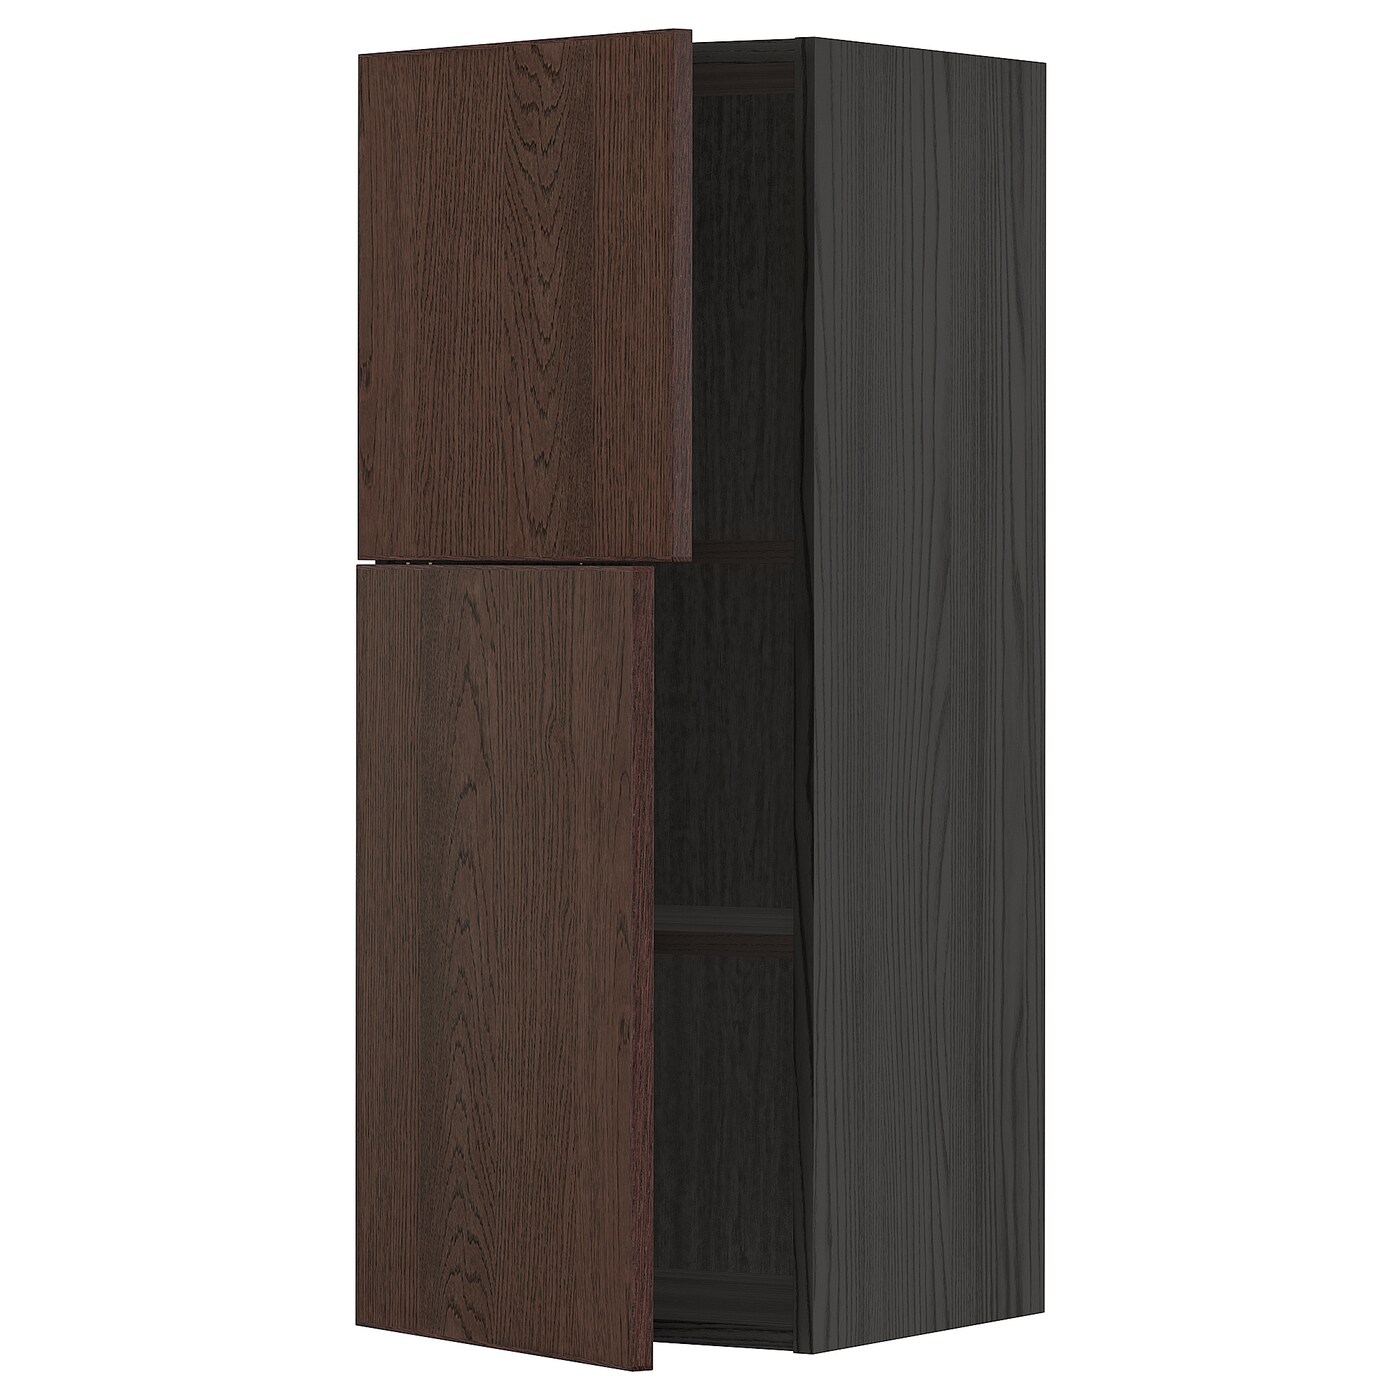 Навесной шкаф с полкой - METOD IKEA/ МЕТОД ИКЕА, 100х40 см,  черный/коричневый